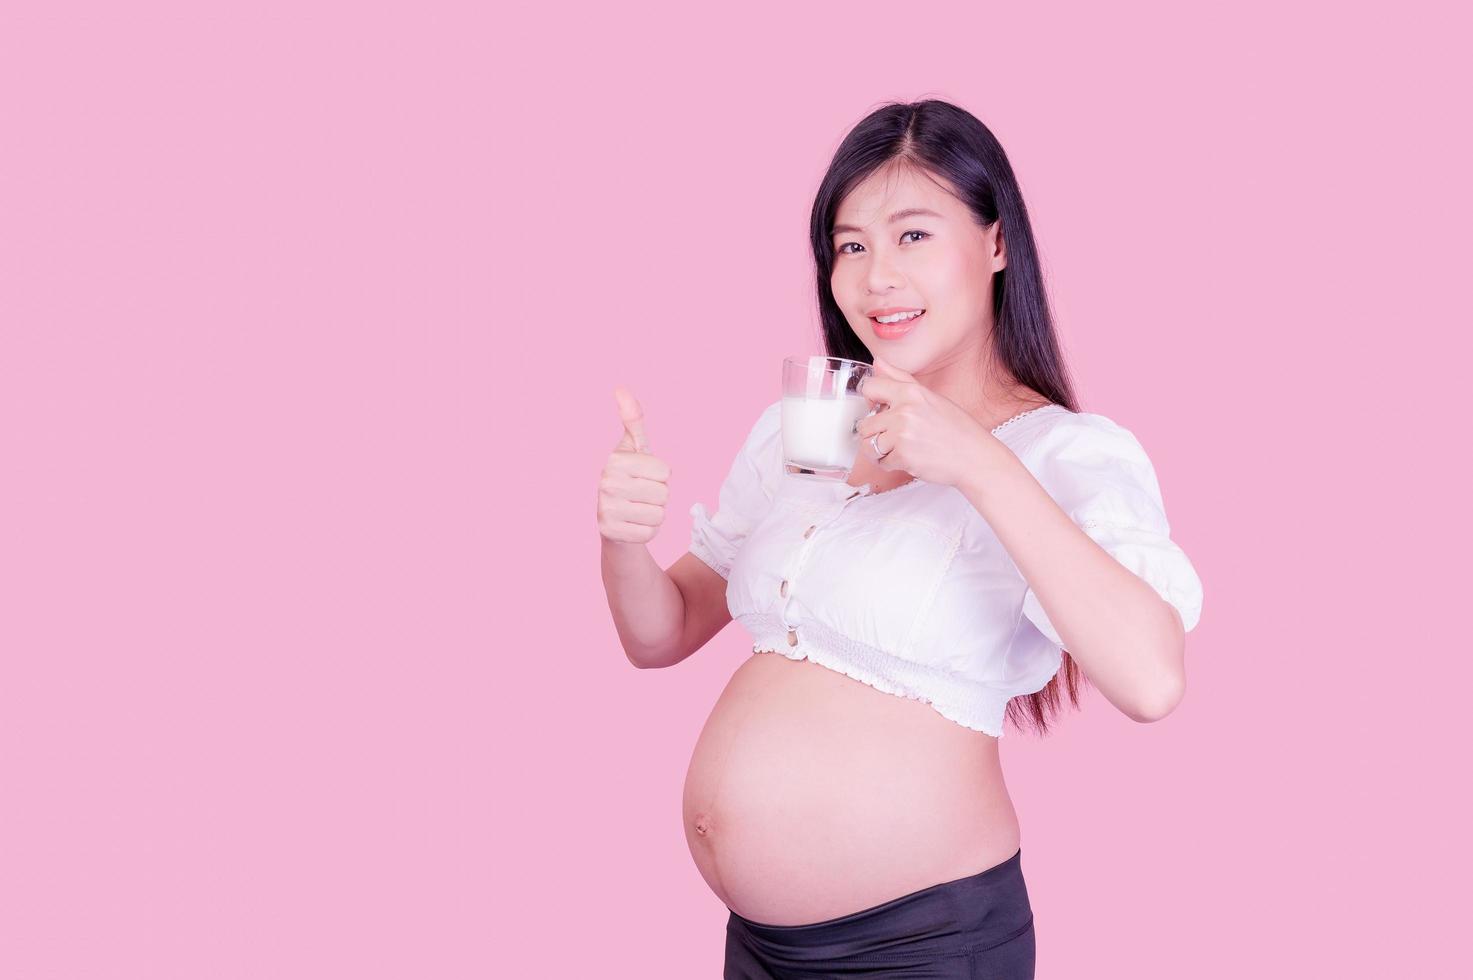 Eine schöne schwangere Frau steht und trinkt frische Milch für eine gute Gesundheit für ihr zukünftiges Baby foto